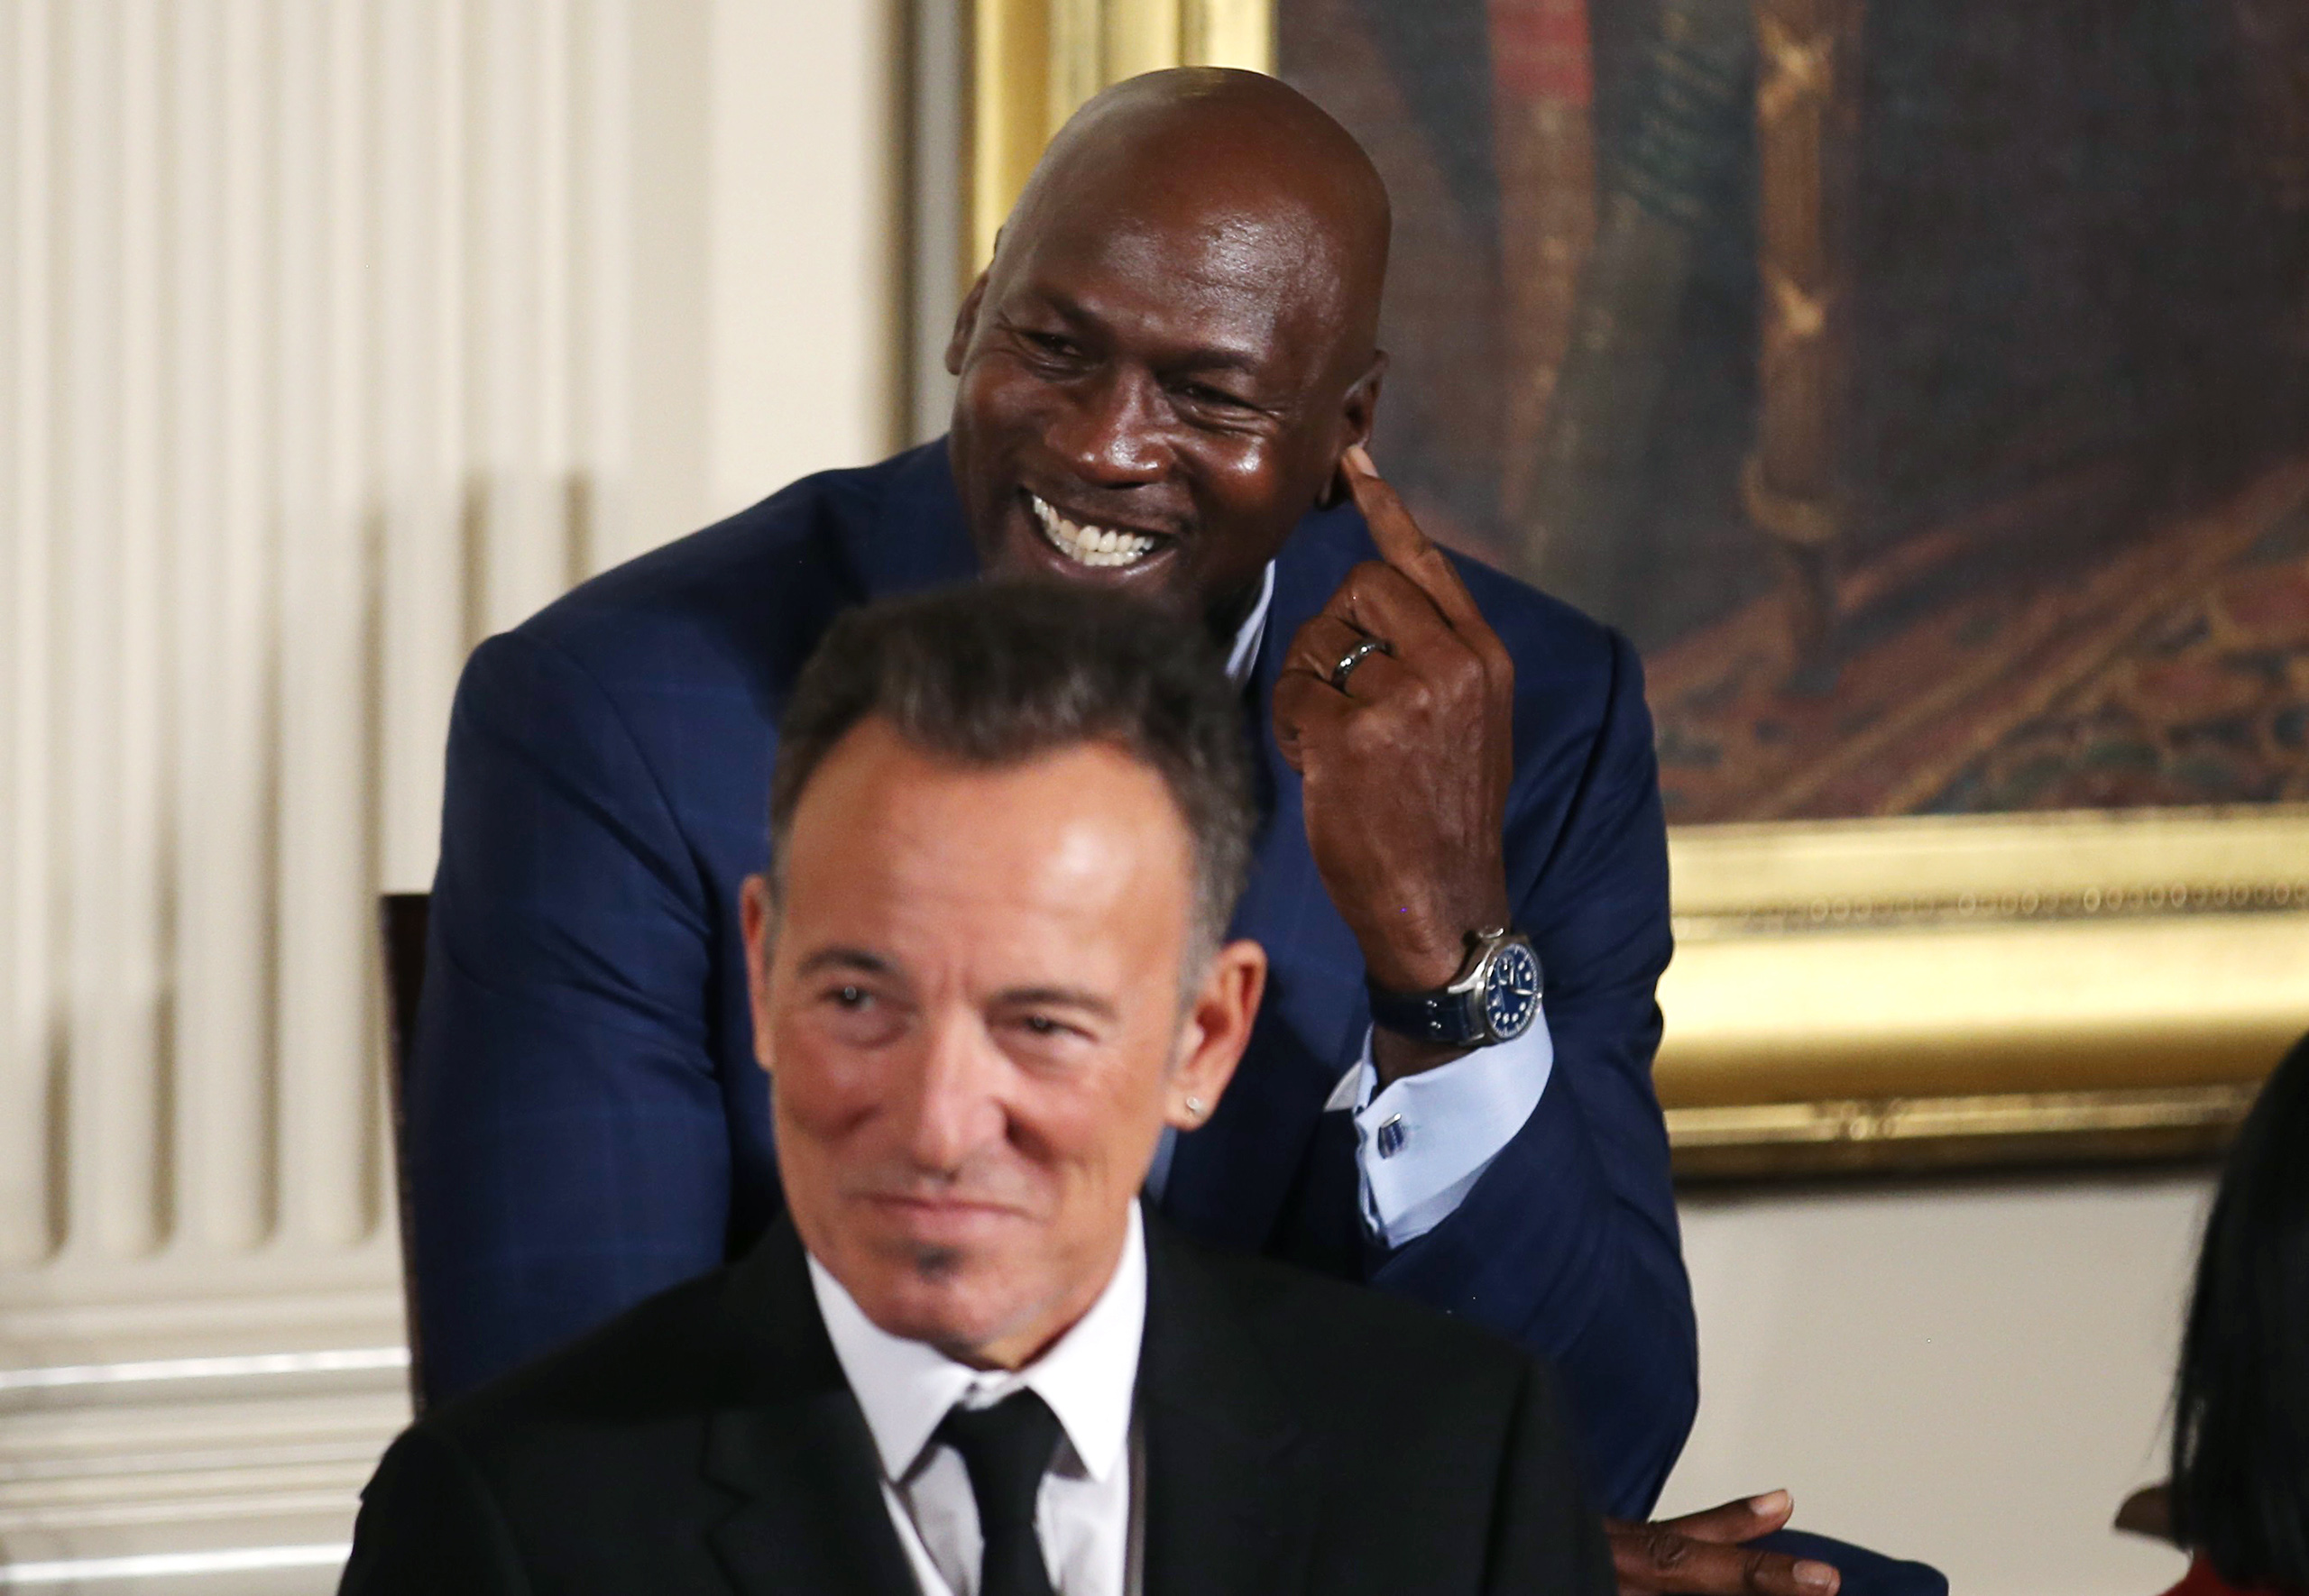 President Obama Pokes Fun at Crying Michael Jordan Meme | Time